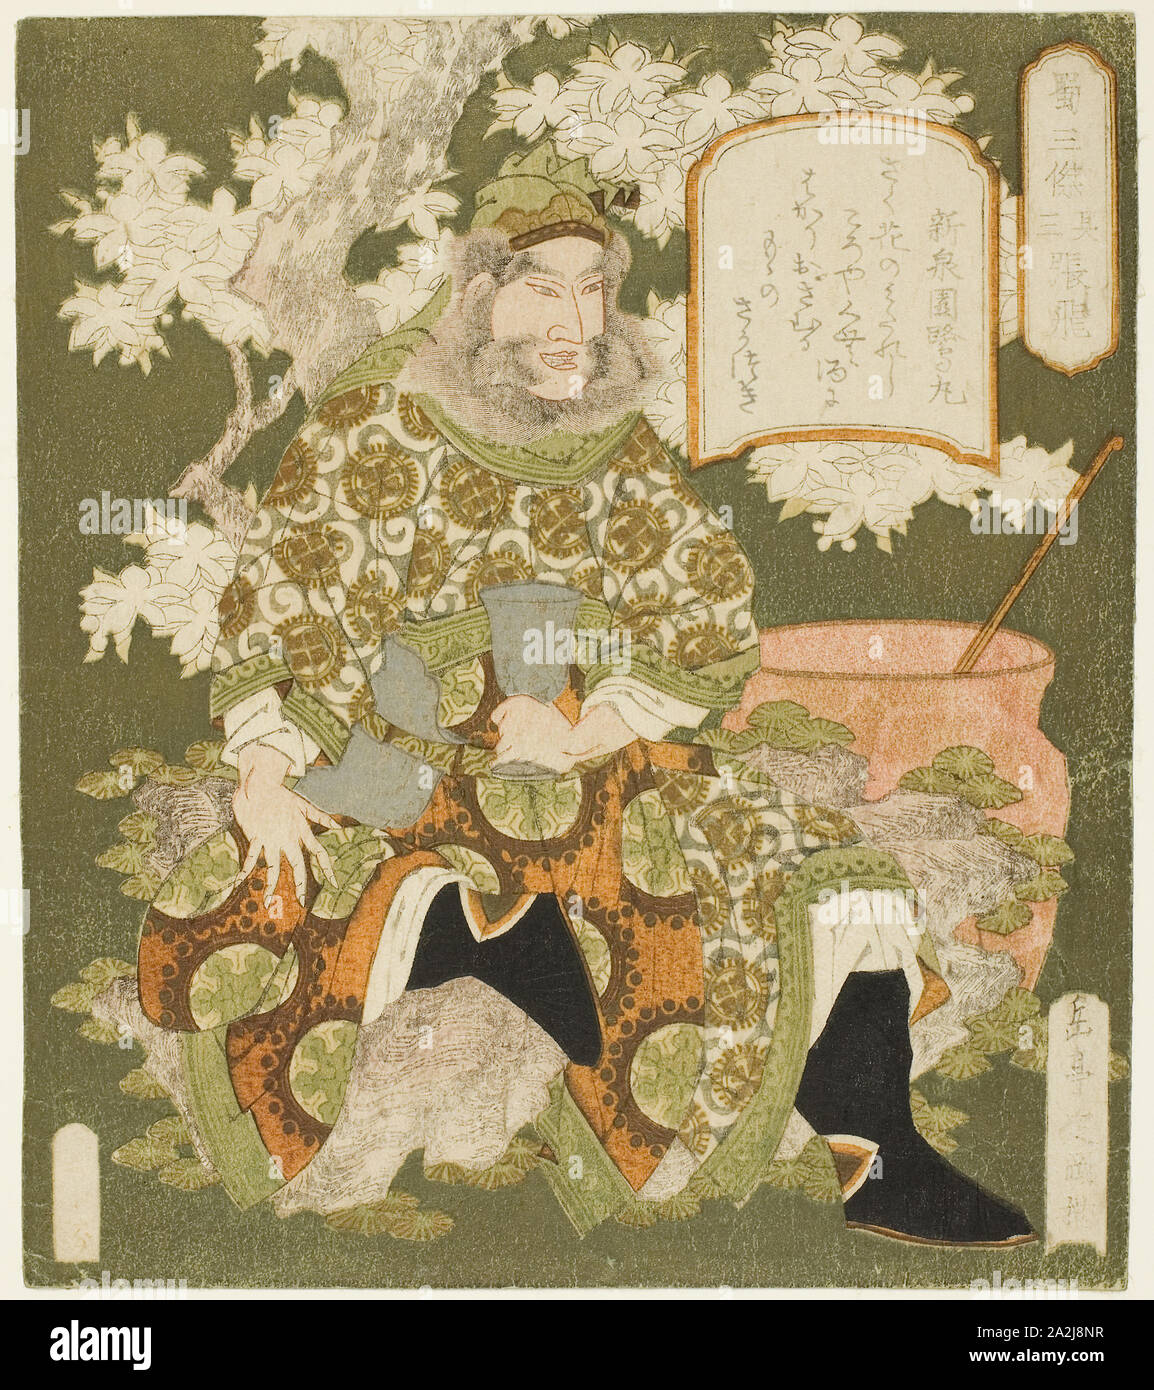 N° 3 : Zhang Fei (Sono san : Chohi), de la série Trois héros de Shu (Shoku sanketsu), ch. 1824, Yashima Gakutei, japonais, 1786 ( ?)-1868, le Japon, la couleur, estampe, shikishiban surimono, 21 x 18,7 cm (8 1/4 x 7 3/8 in Banque D'Images